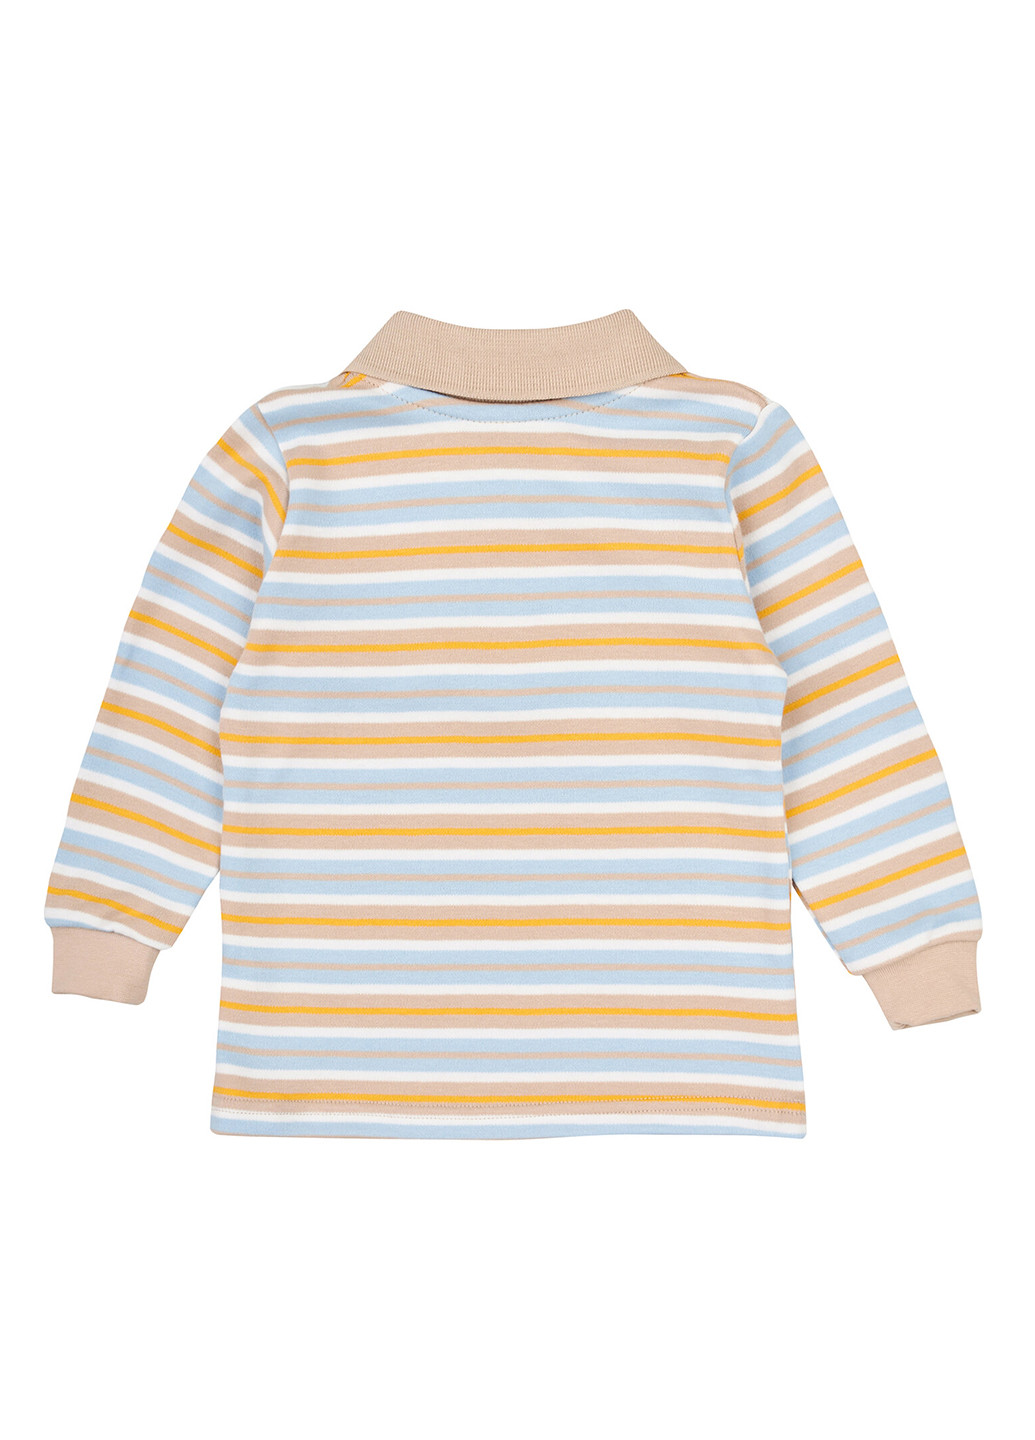 Бежевая детская футболка-поло для мальчика Z16 в полоску